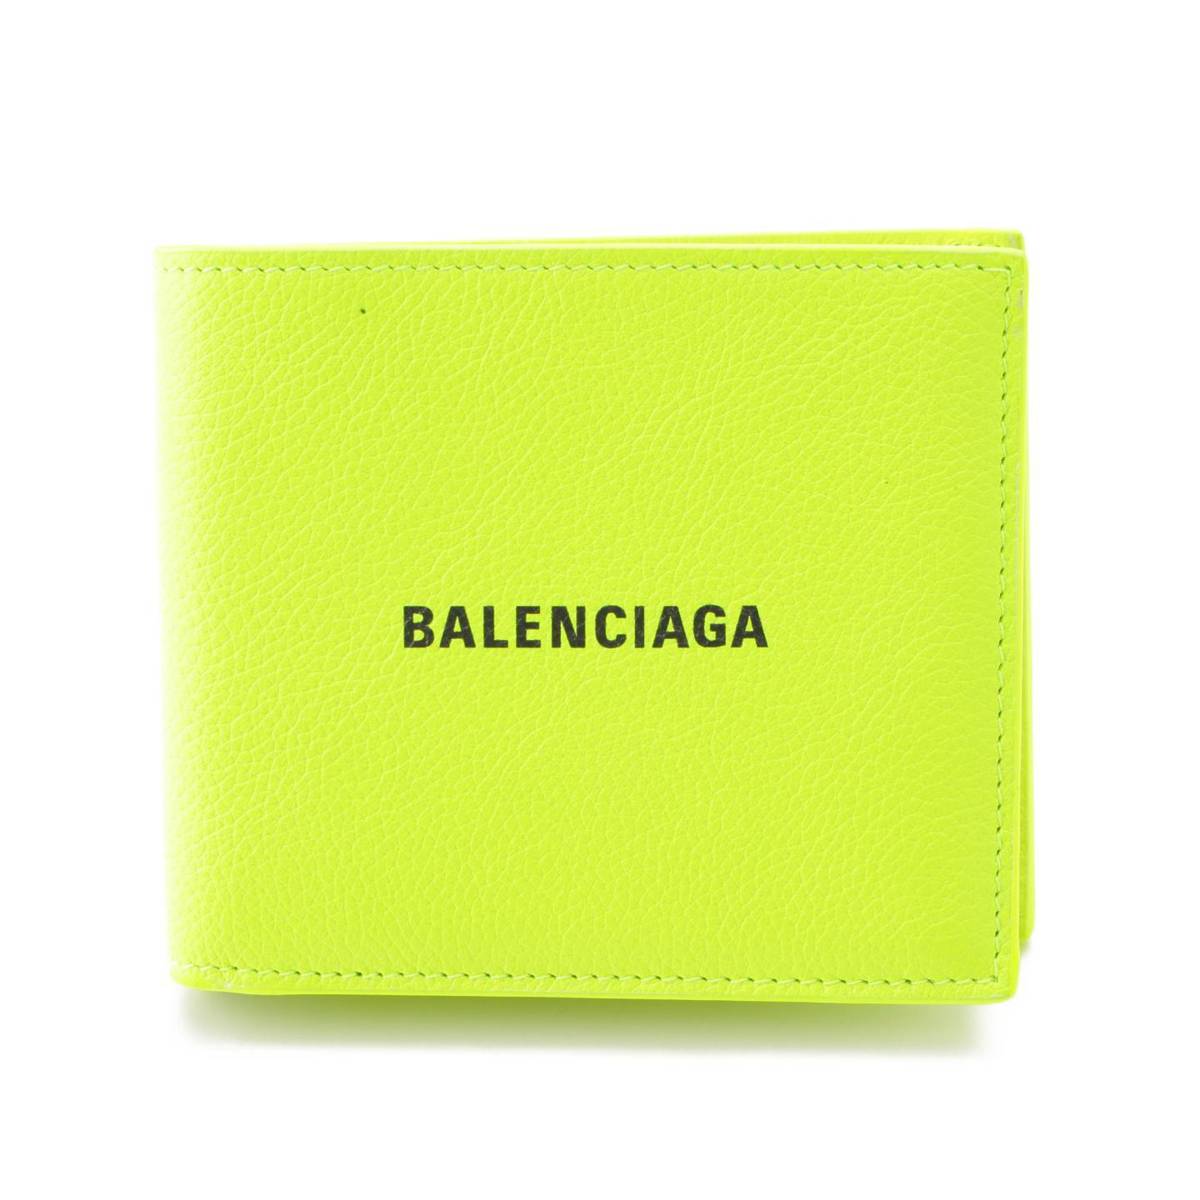 バレンシアガ(Balenciaga) ロゴ レザー 二つ折り財布 ウォレット 594315 イエロー